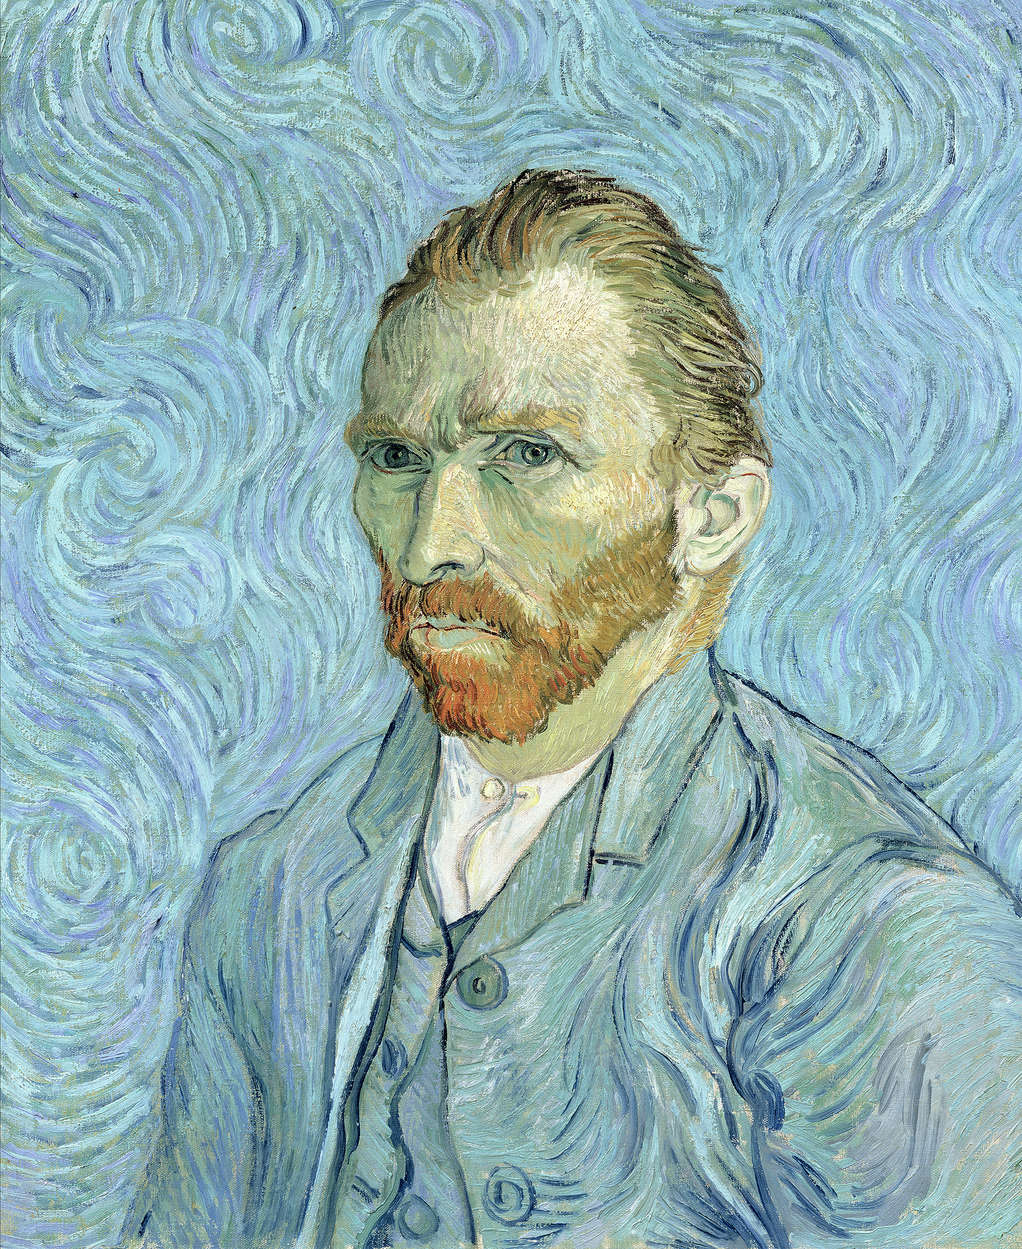             Autoritratto" murale di Vincent van Gogh
        